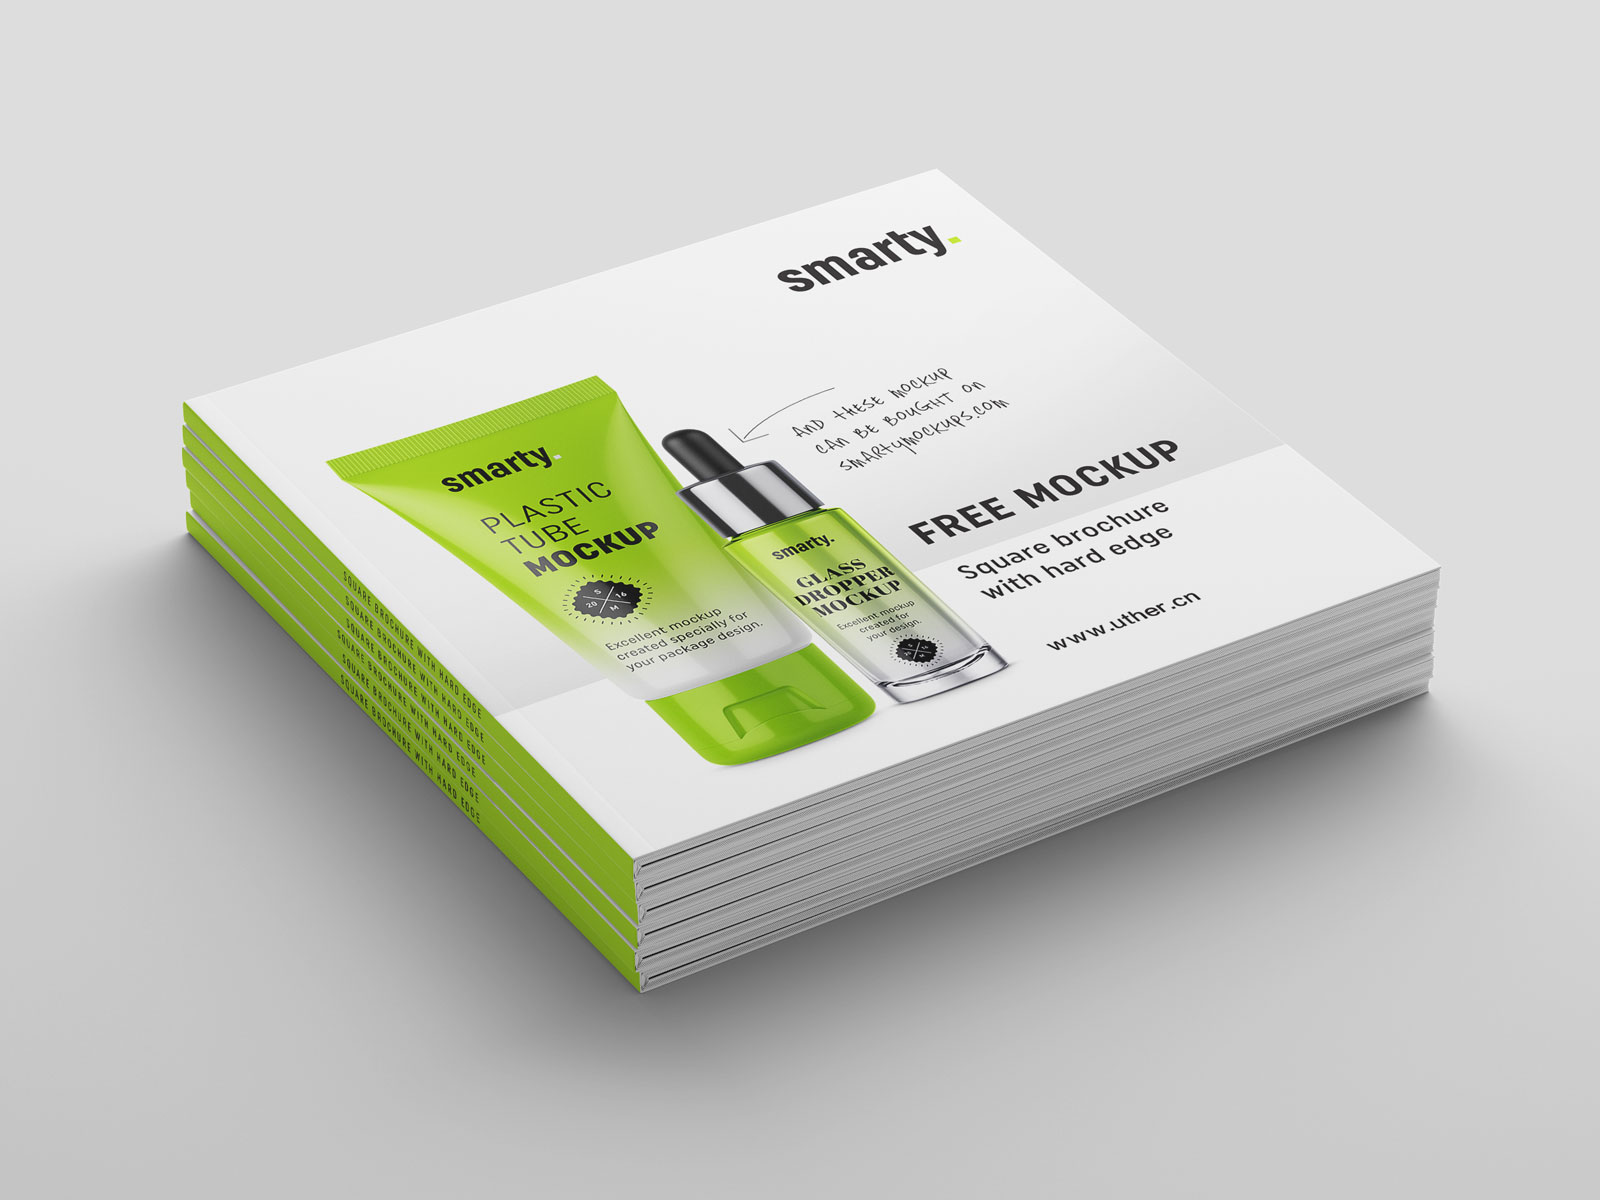 绿色大气正方形产品宣传册设计封面展示样机素材brochure mockup .psd素材